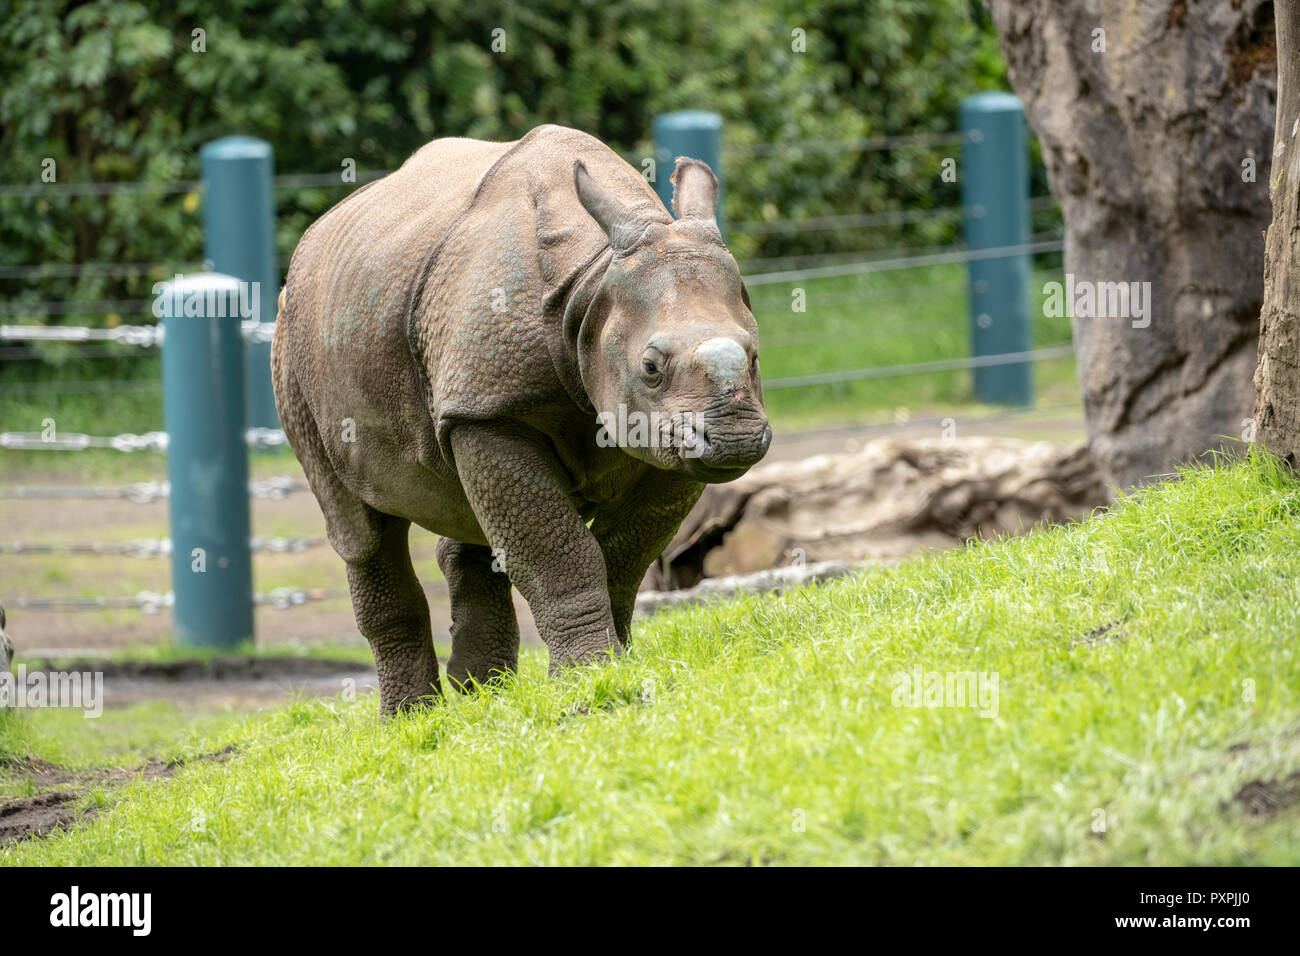 Taj, a 17 mois rhinocéros à une corne / Rhinocéros indien / Rhinocéros unicorne de l'Inde à pied dans sa nouvelle maison Banque D'Images